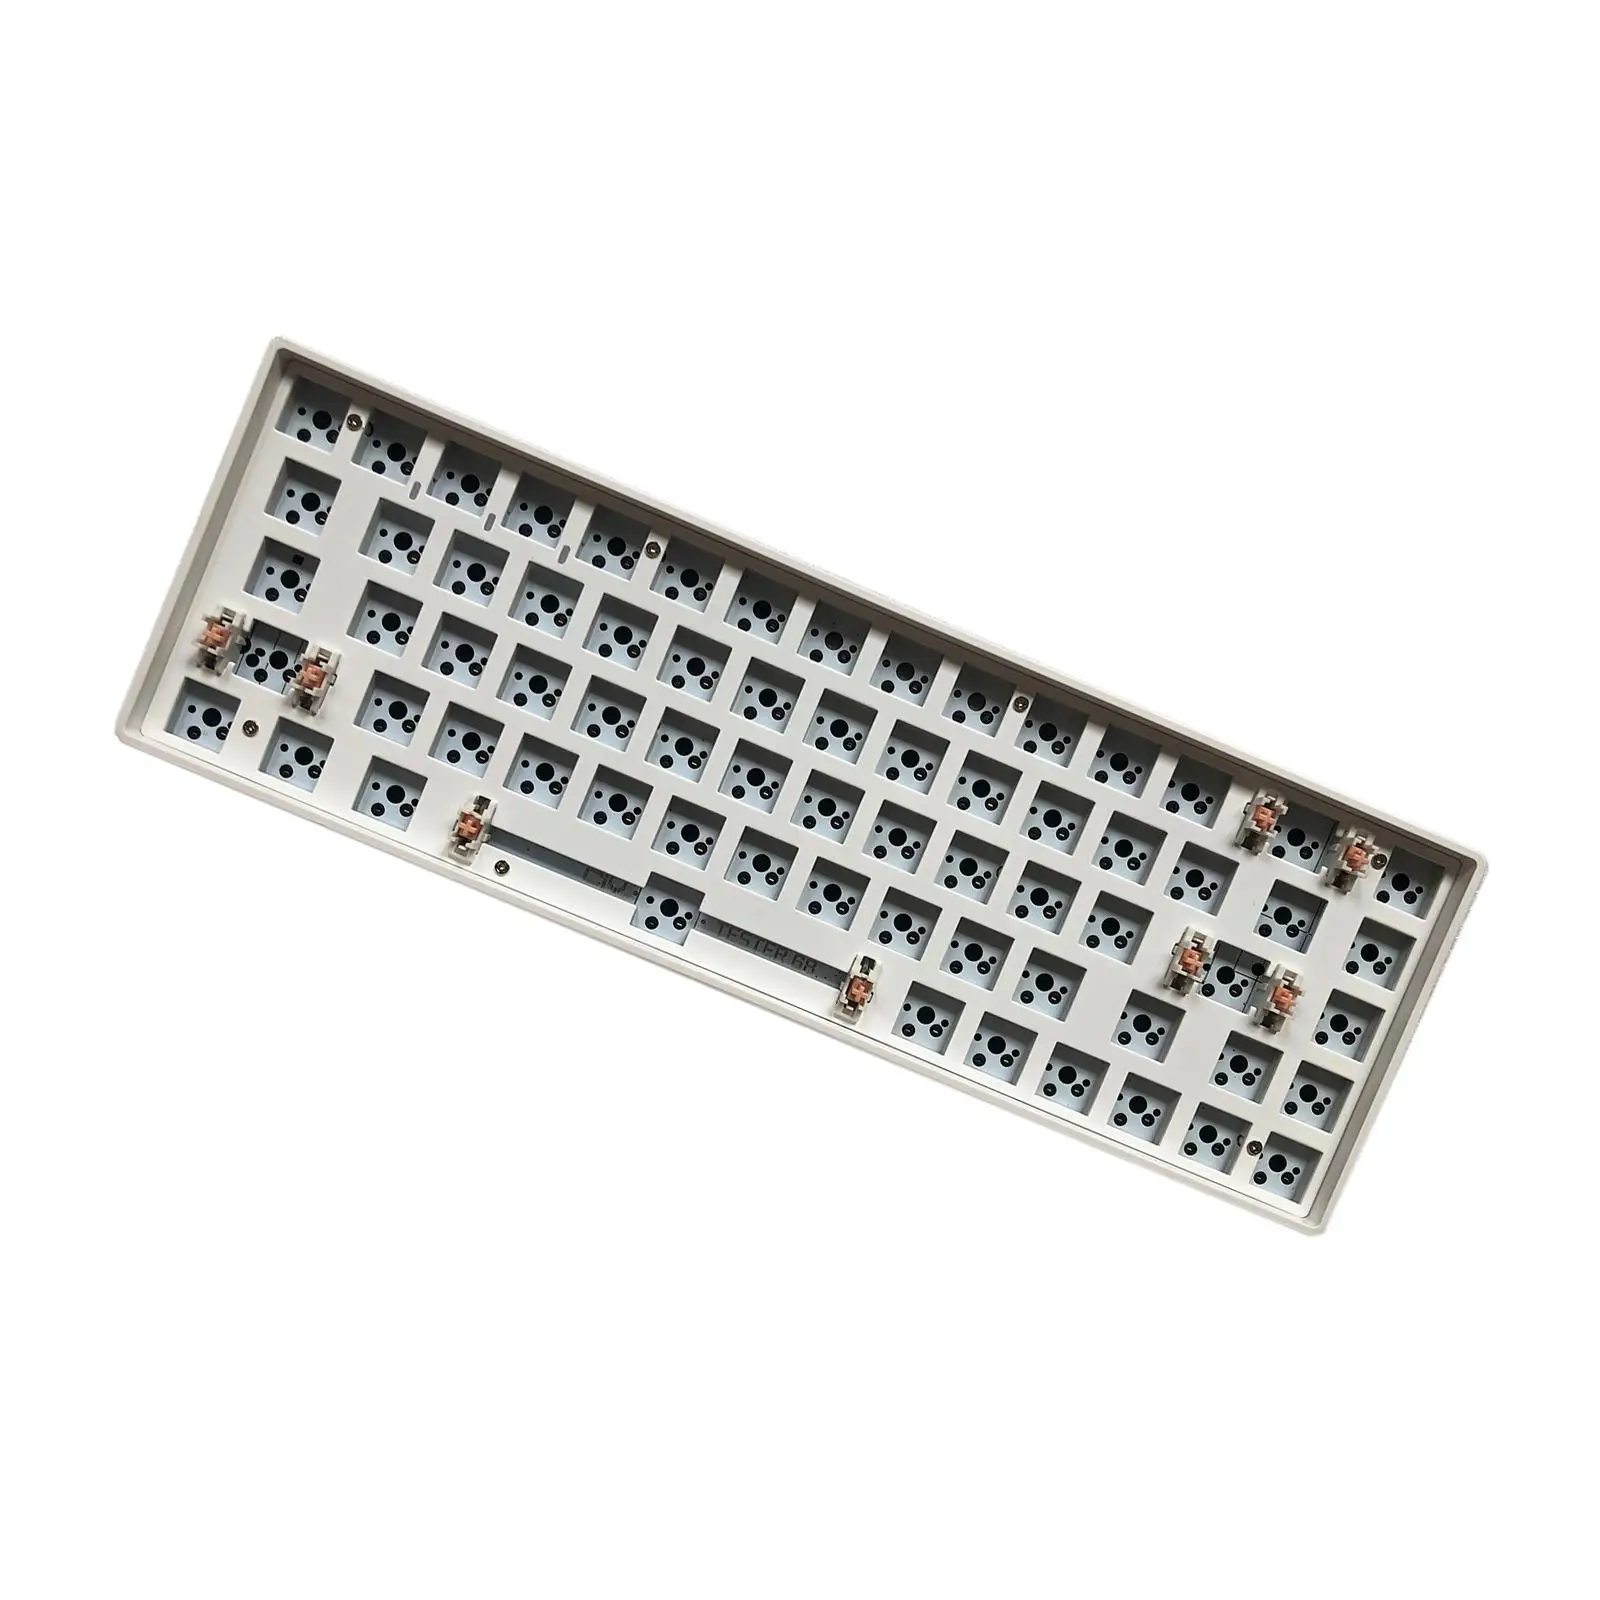 68 Keys Modular Mechanical Keyboard Compact Keyboard White DIY Kit Gaming Hot-Swap Wireless 2.4G Keyboard for Windows Laptop